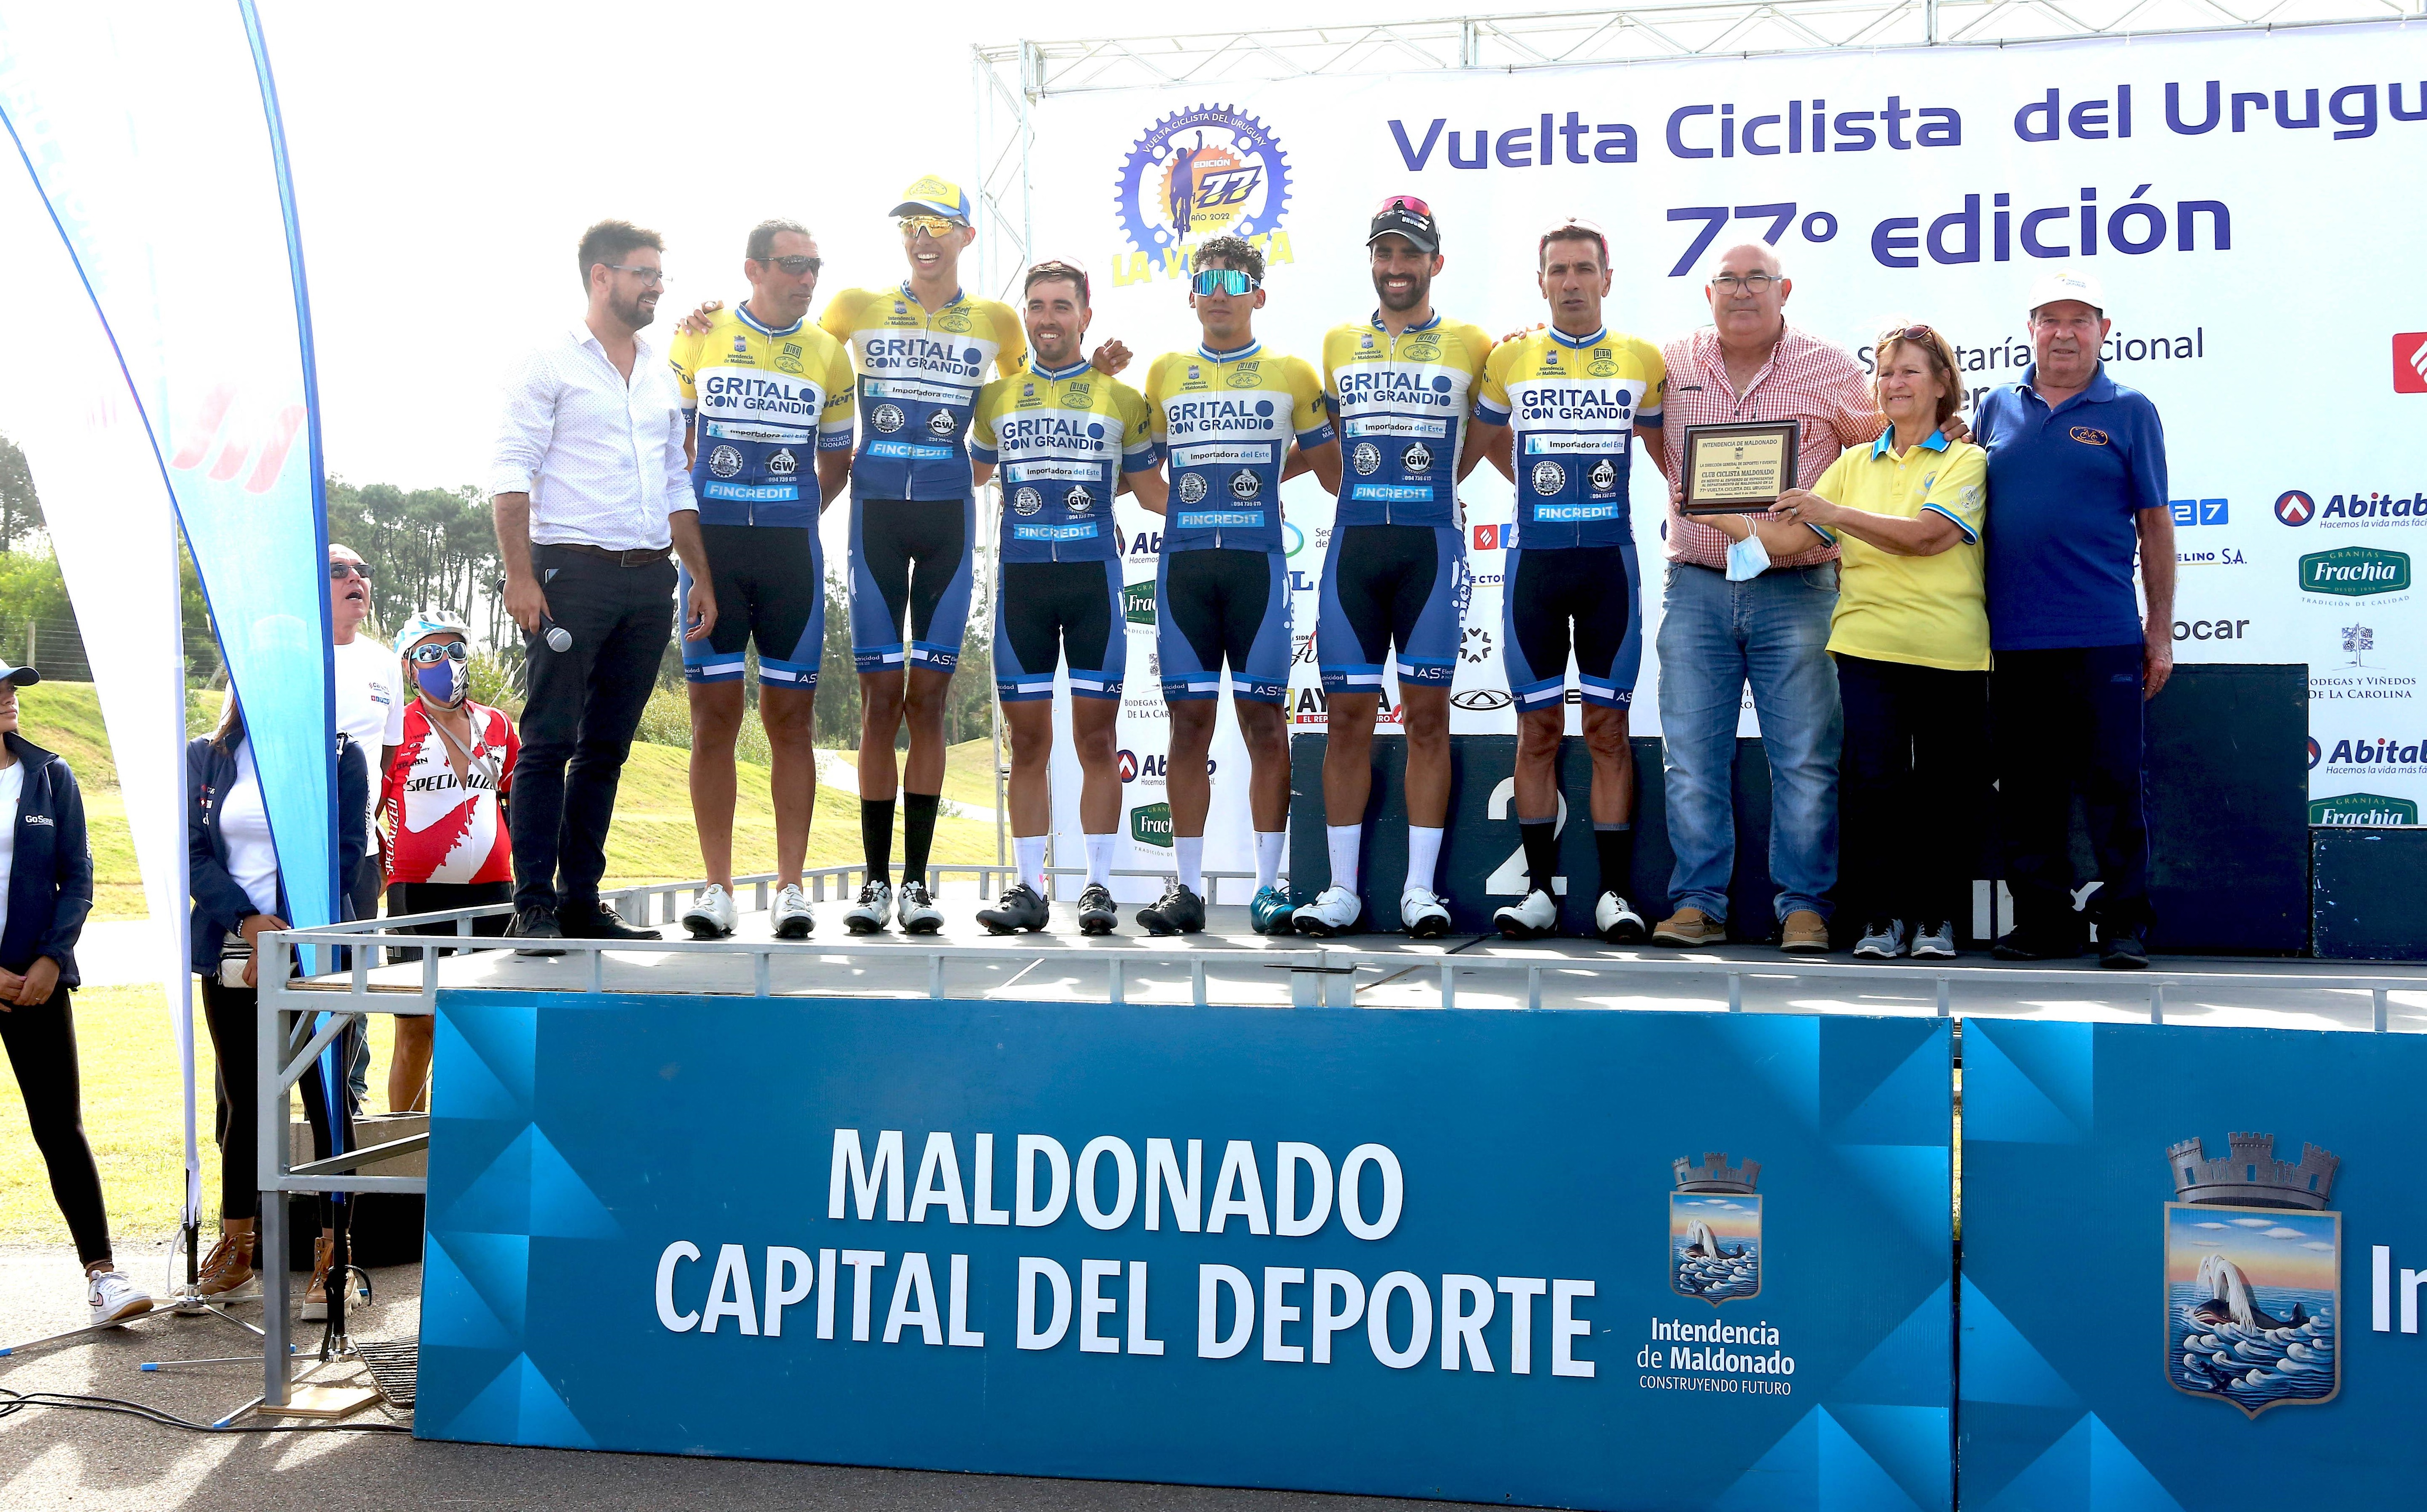 Llegada_Vuelta_Ciclista-4